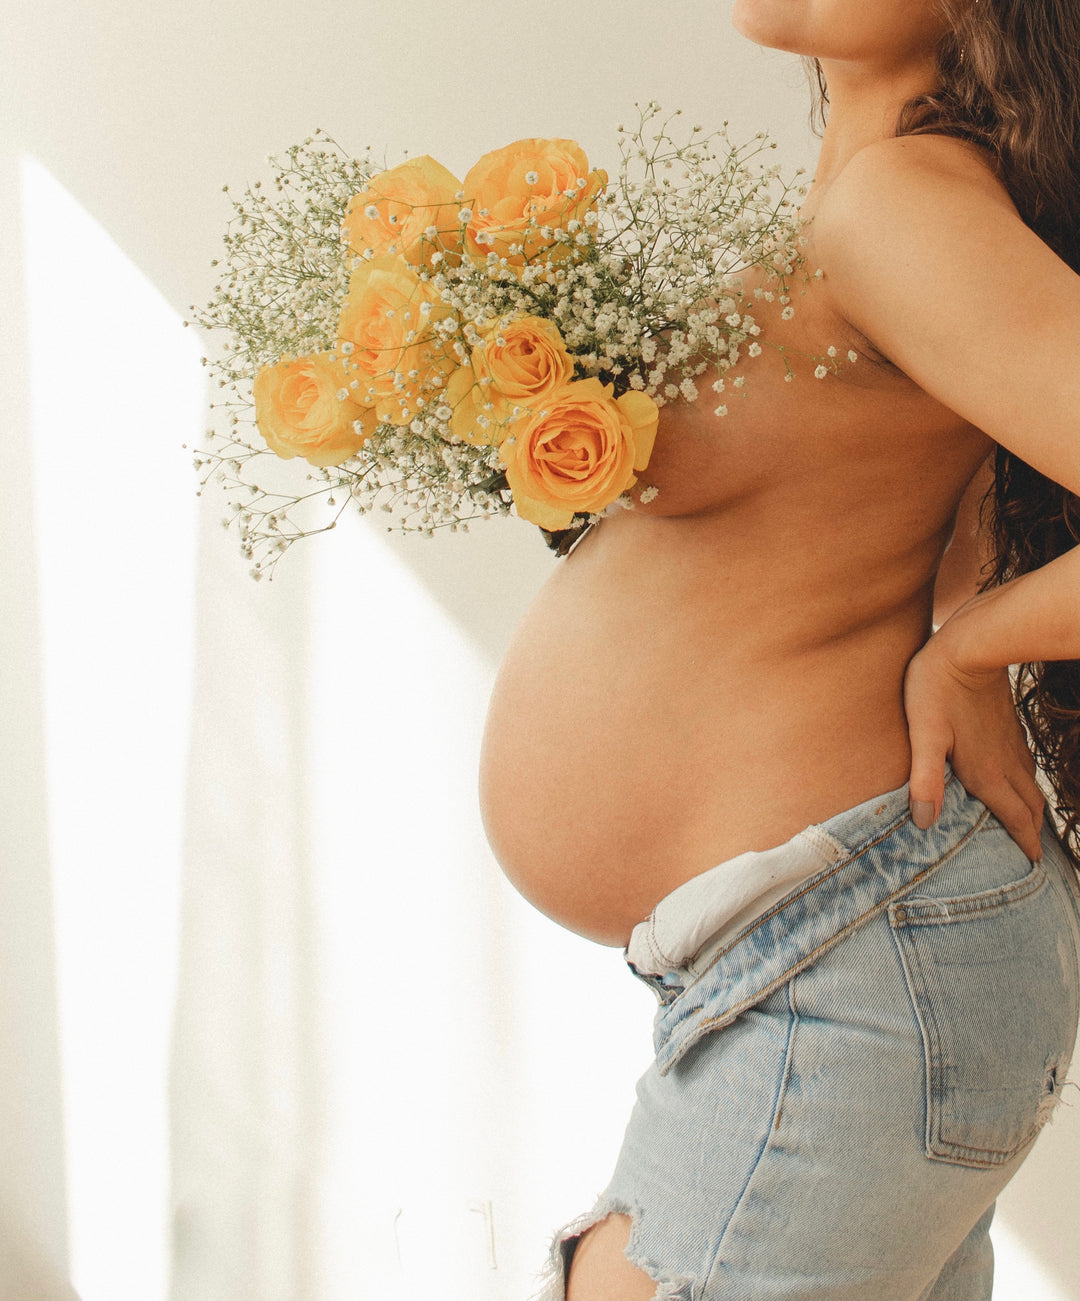 5 aliments à limiter pour tomber enceinte